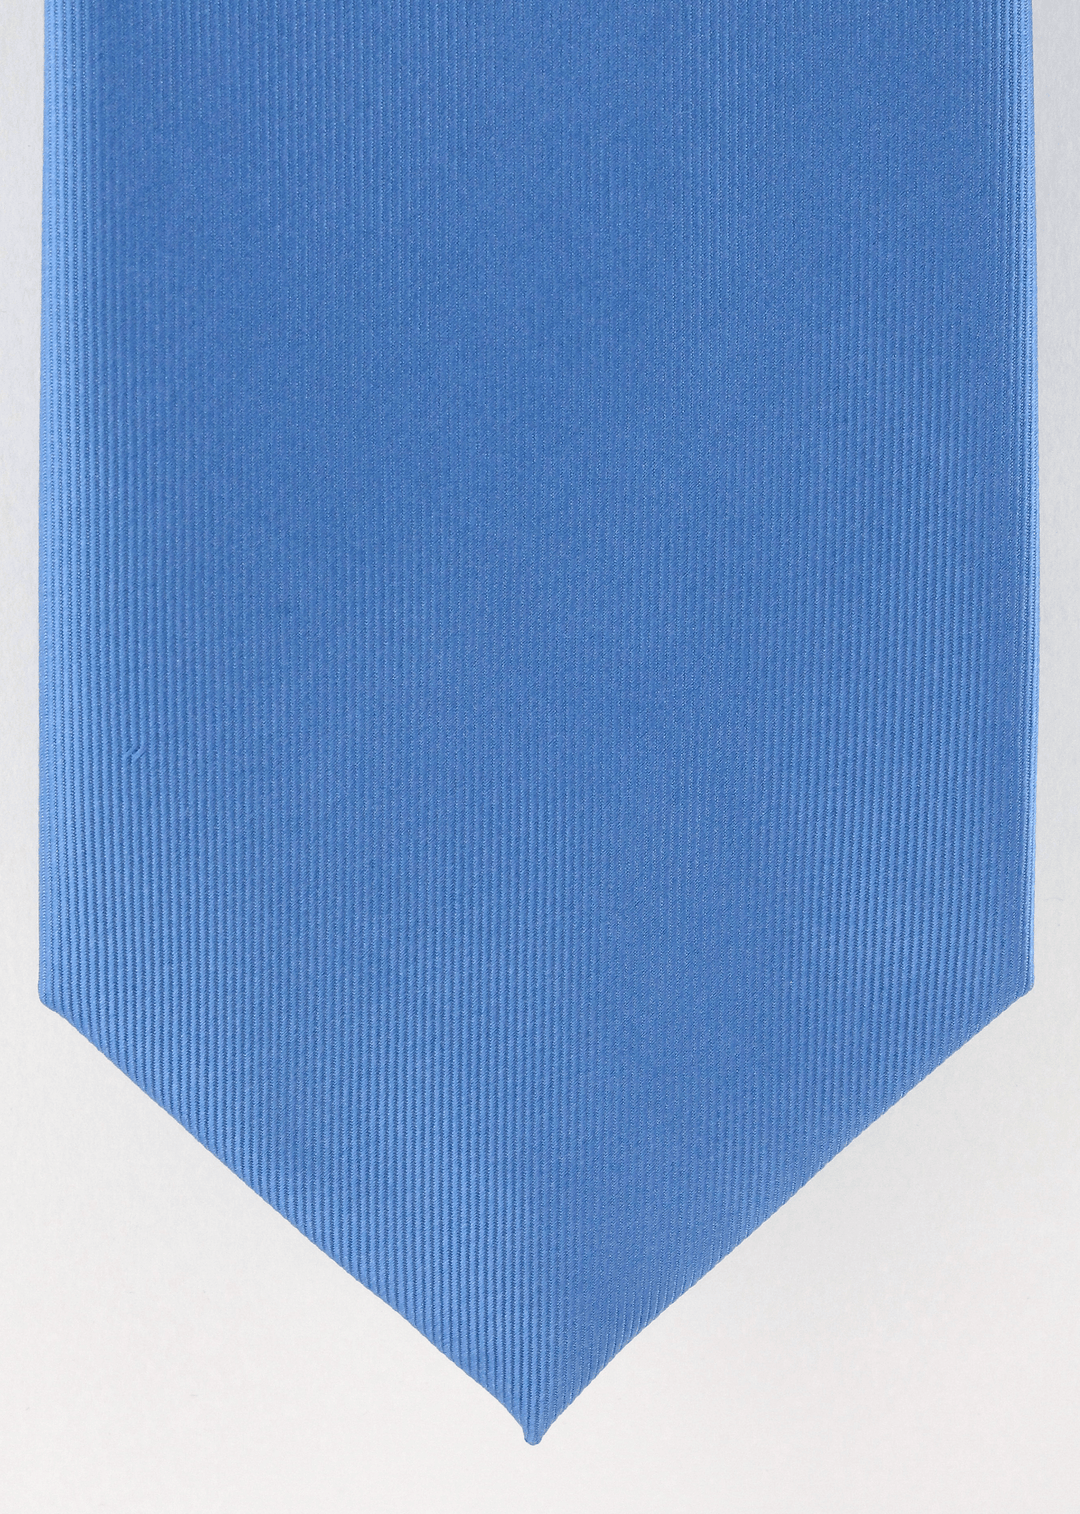 Cravate bleu ciel | Cotton Park